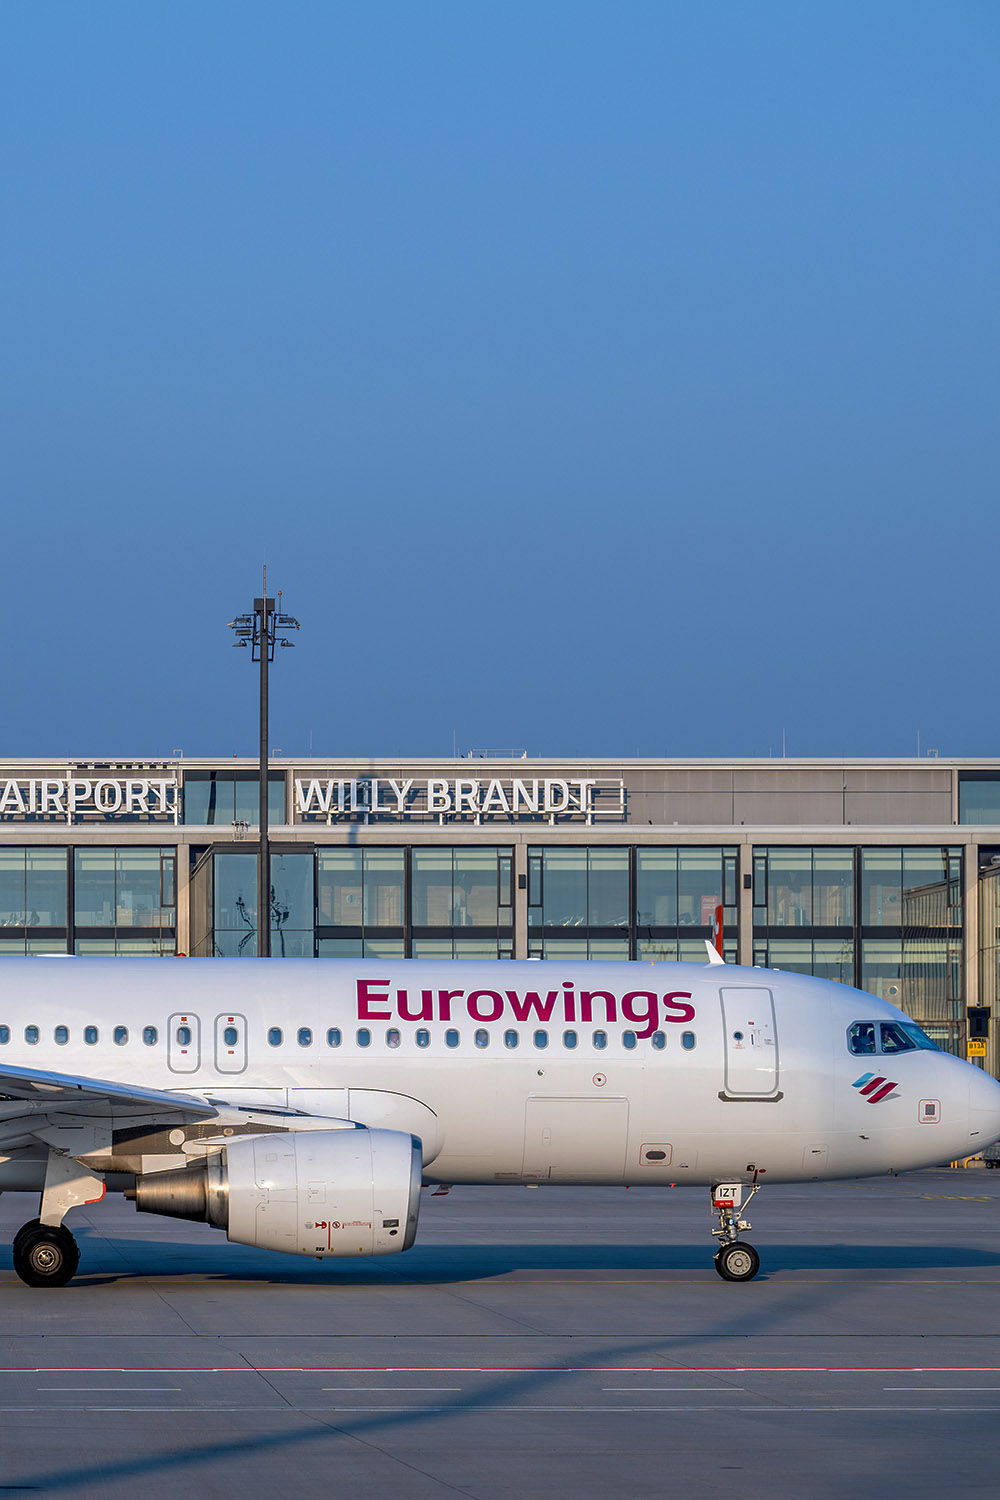 Eurowings verdoppelt Flugangebot